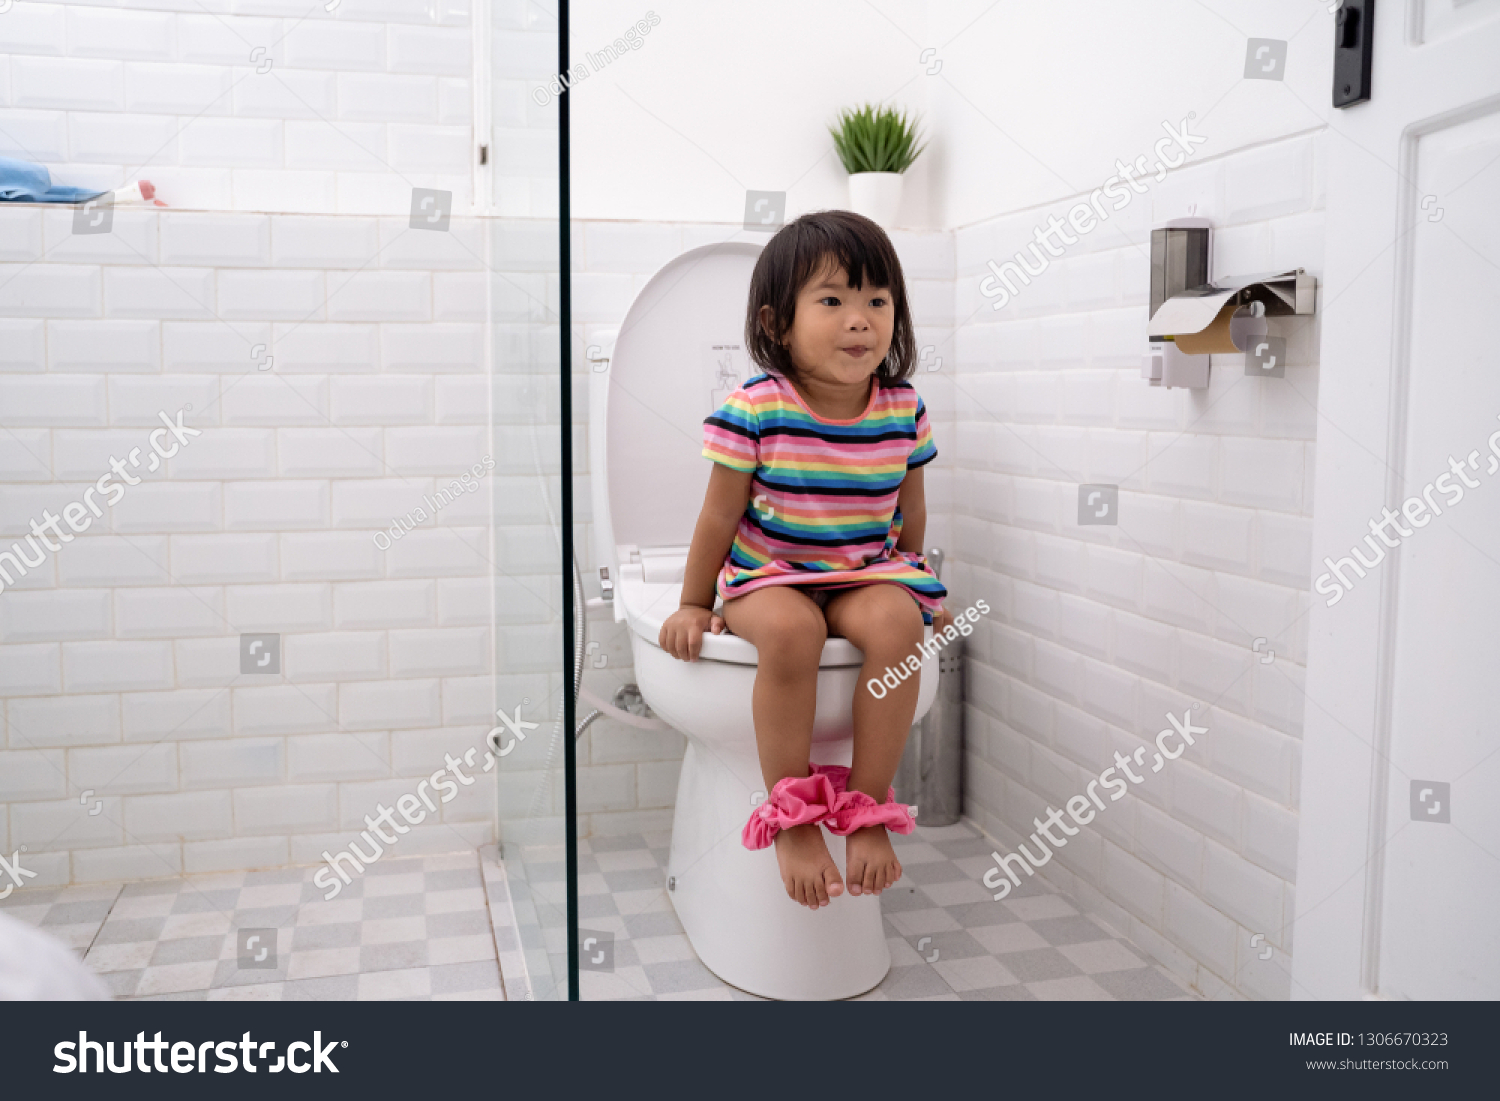 Chinese girls go toilet